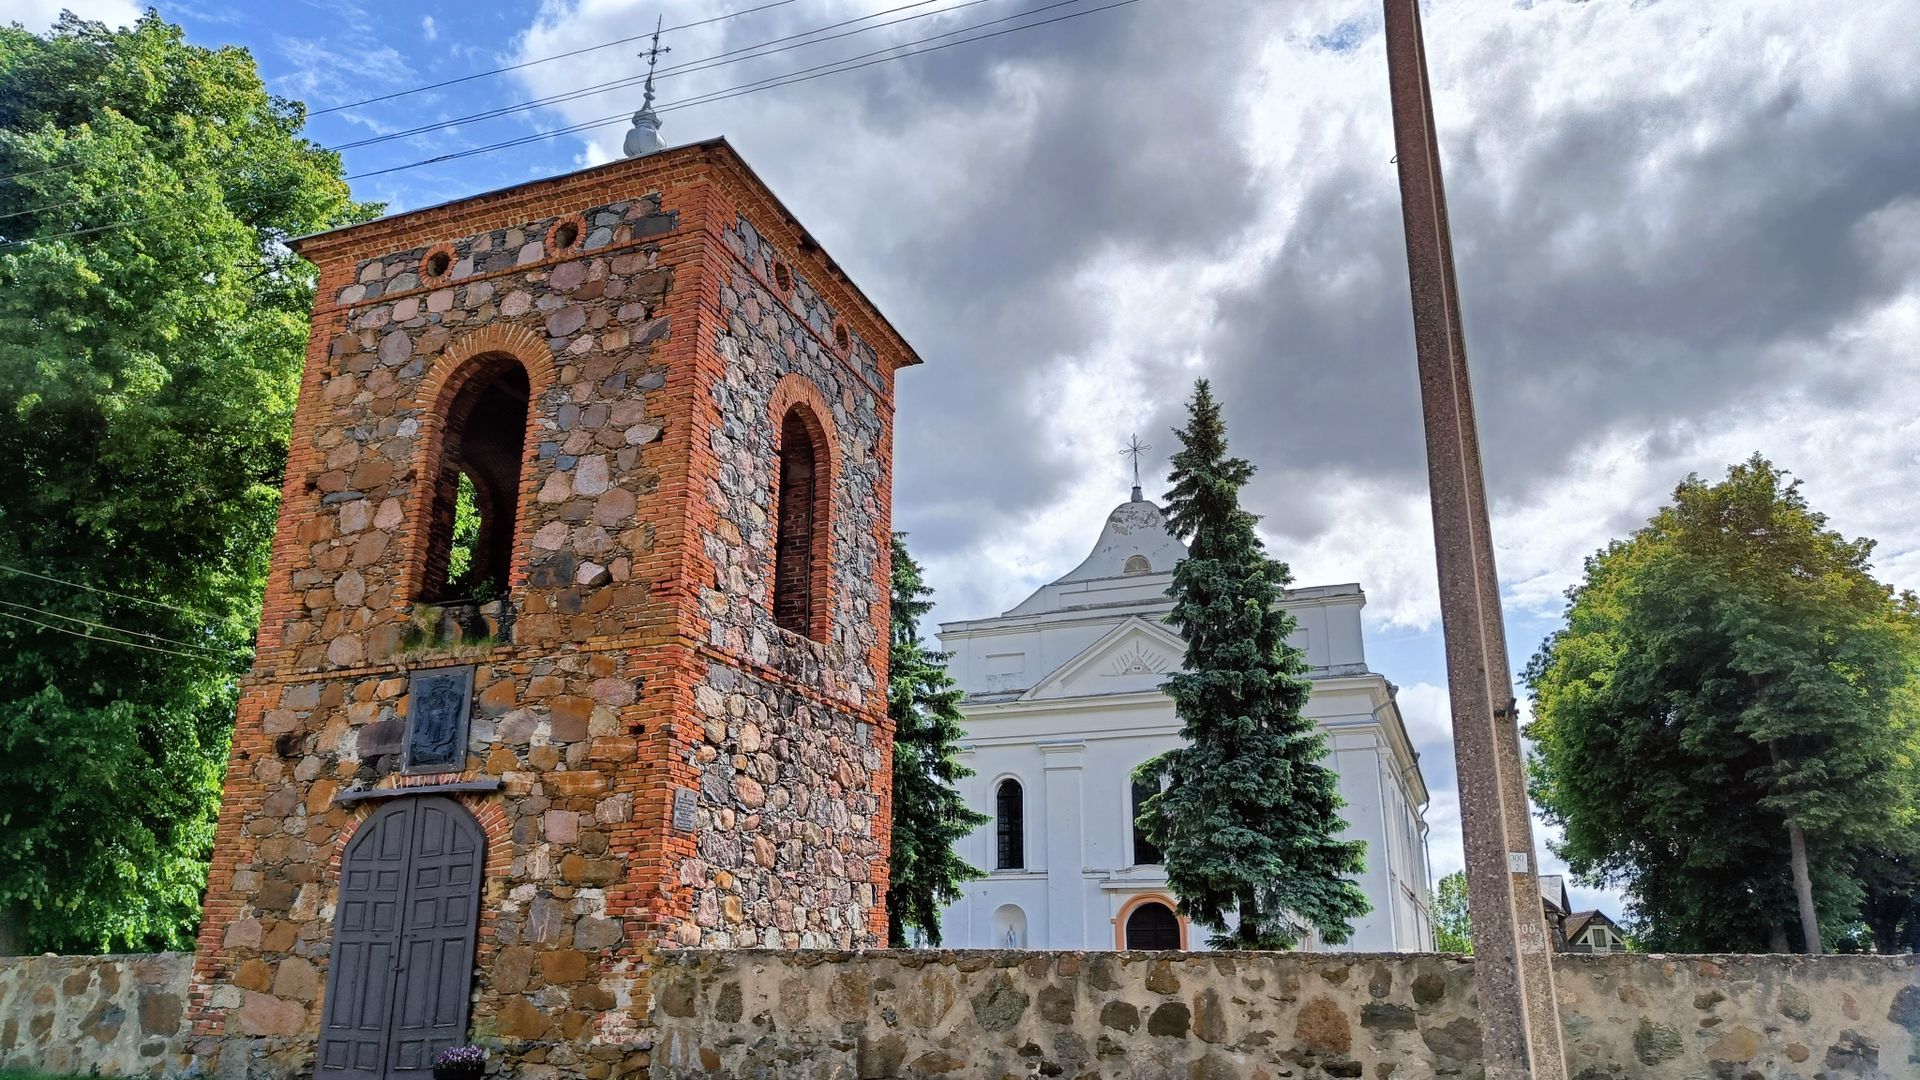 Darsūniškio Švč. Mergelės Marijos Ėmimo į dangų bažnyčia ir varpinė